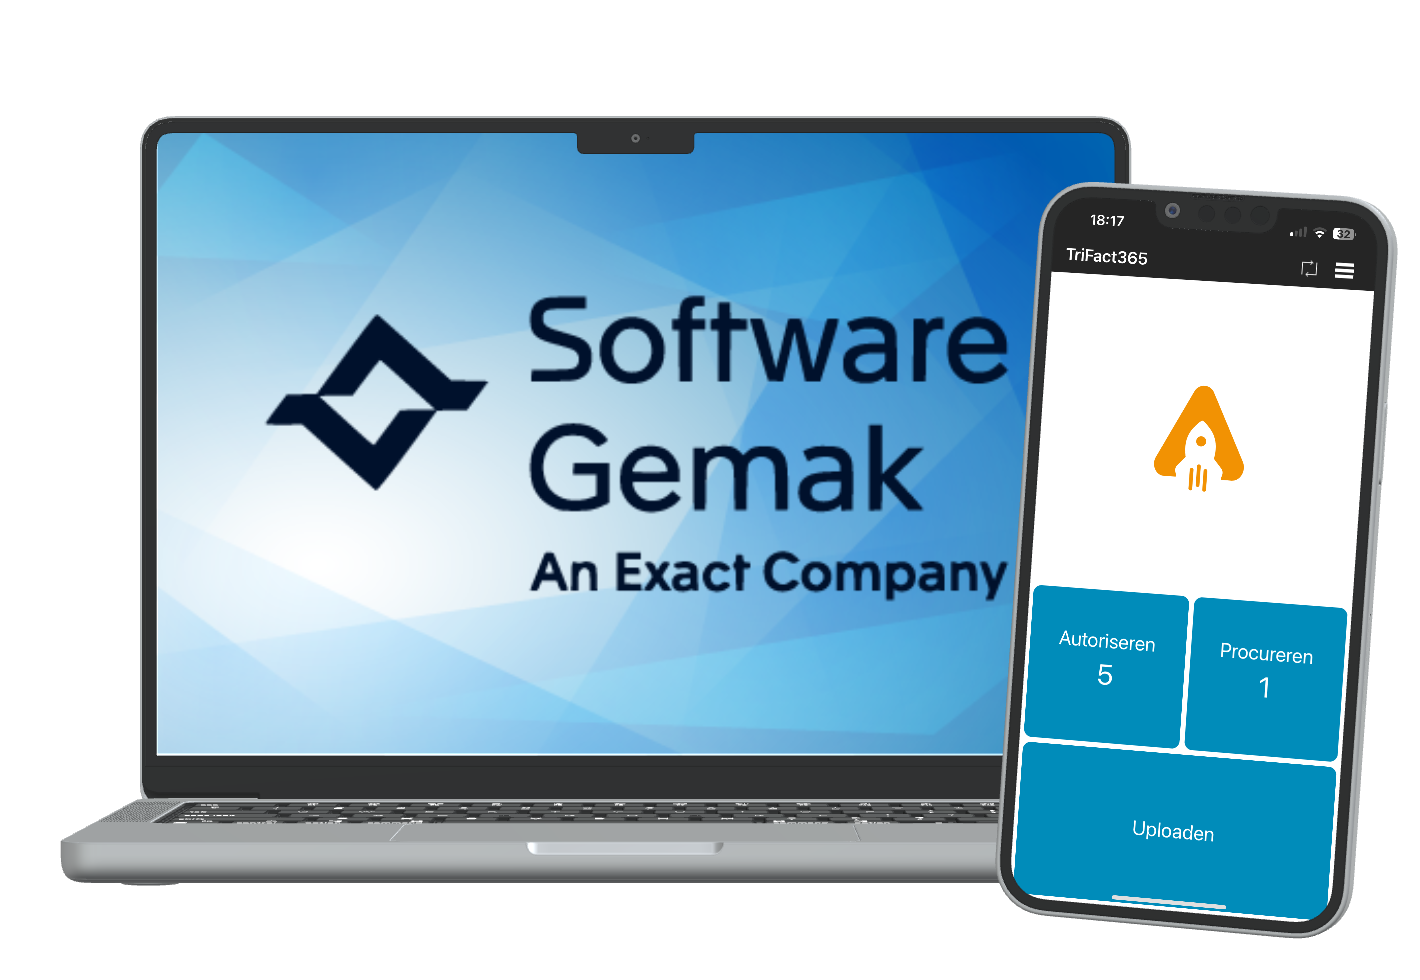 Laptop met Software Gemak logo met daarnaast een smartphone met de TriFact365 app